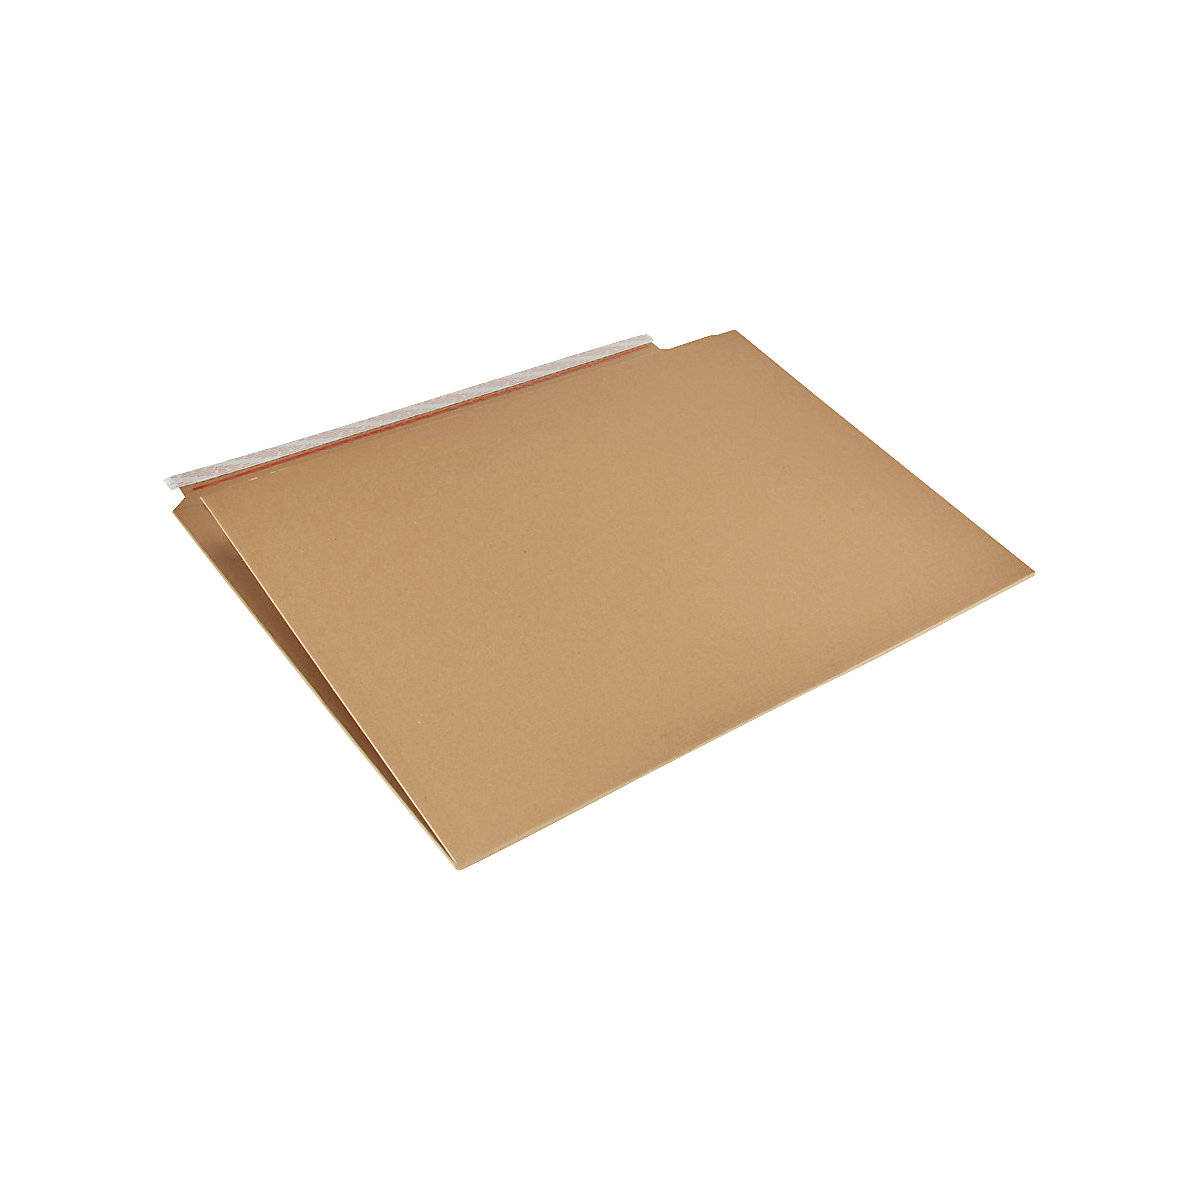 Imballaggio per libri Multistar – flow, marrone, lungh. x largh. 820 x 620 mm, a partire da 50 pz.-2